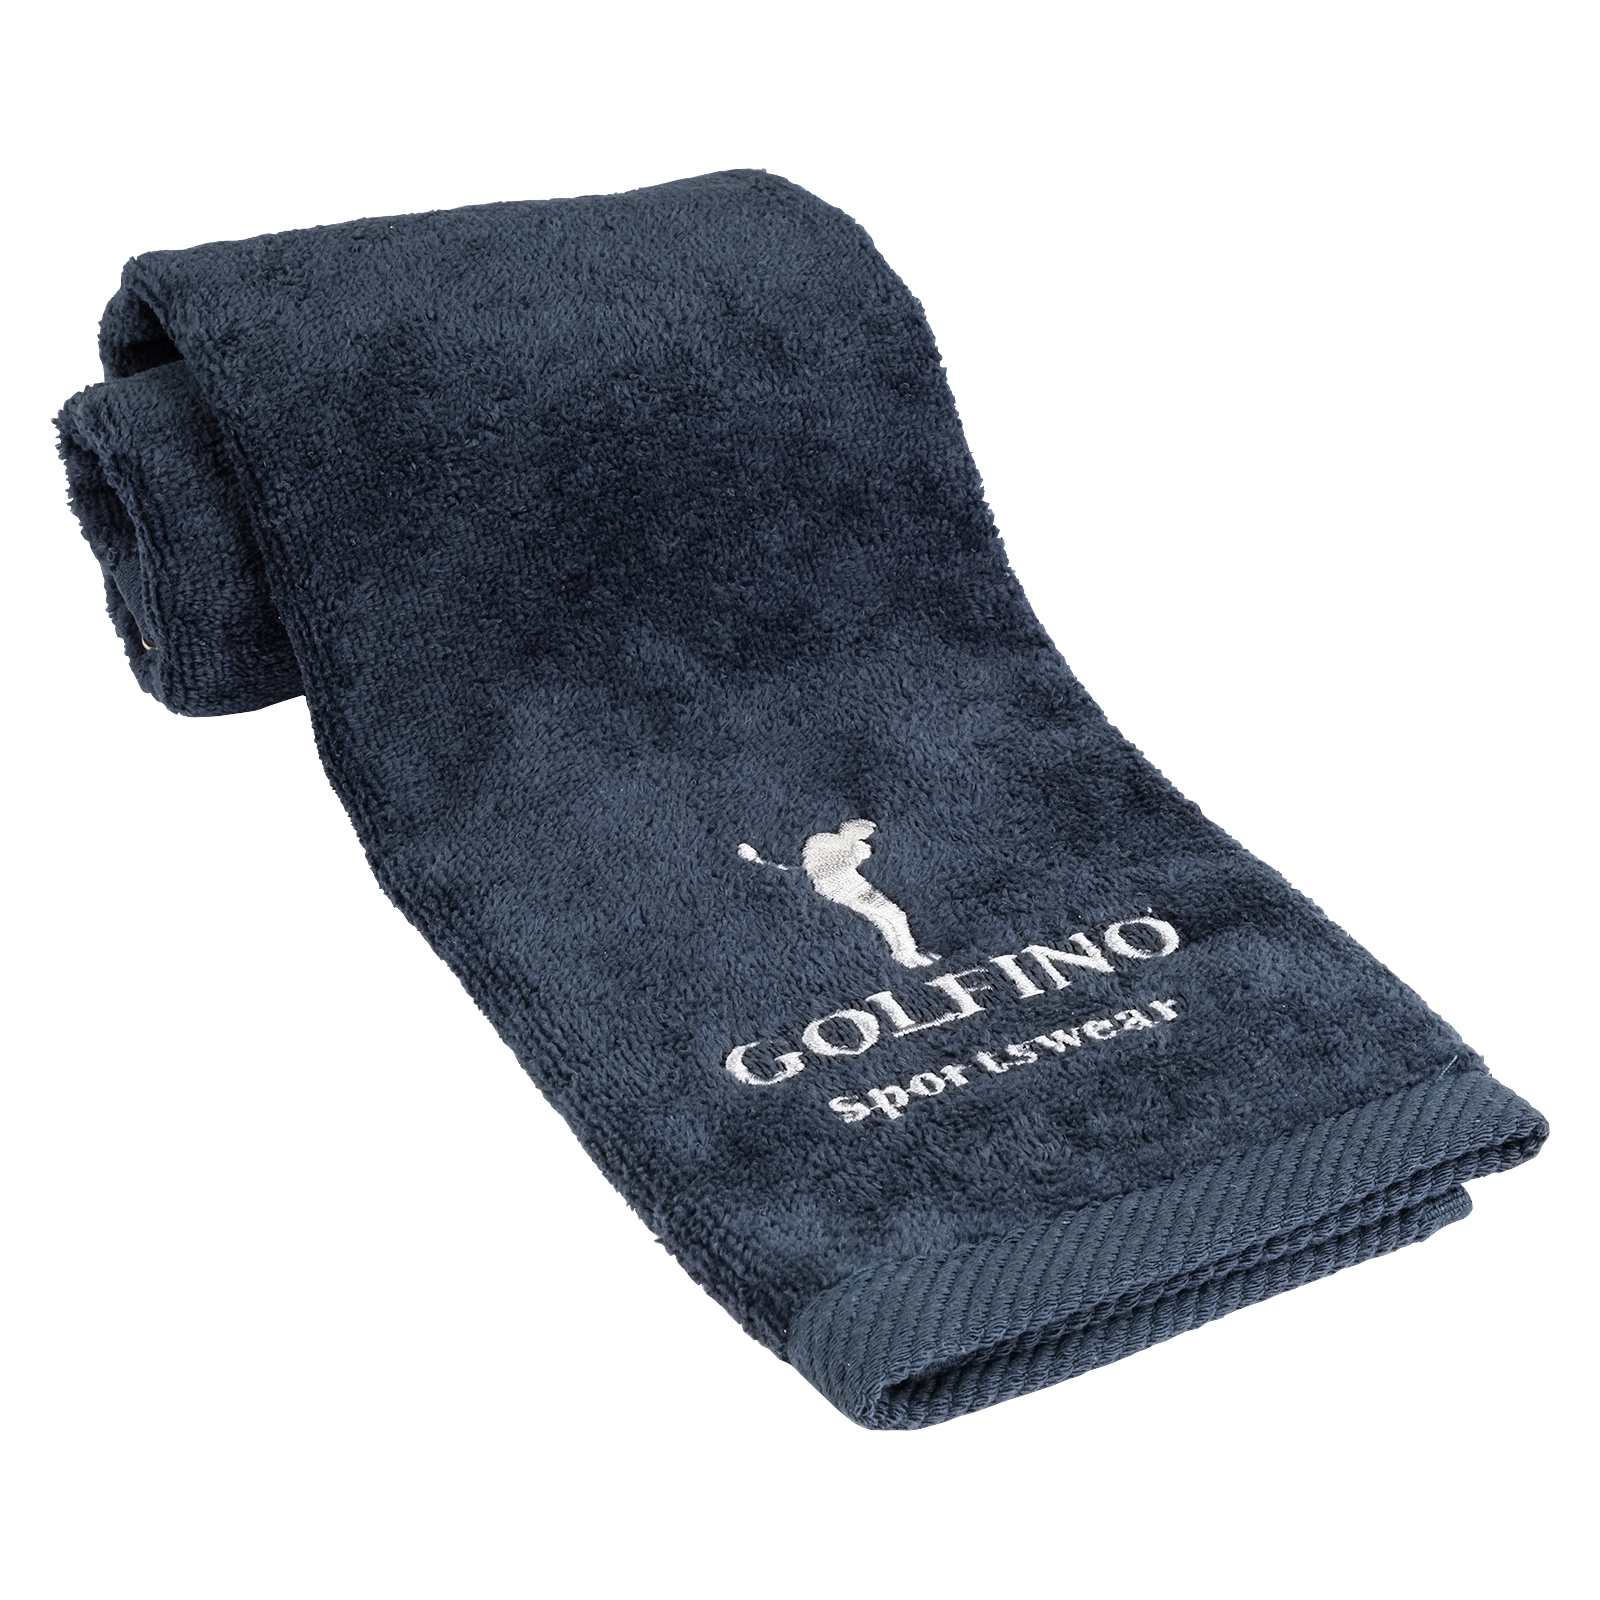 Saugfähiges Golf Handtuch für Schläger und Equipment